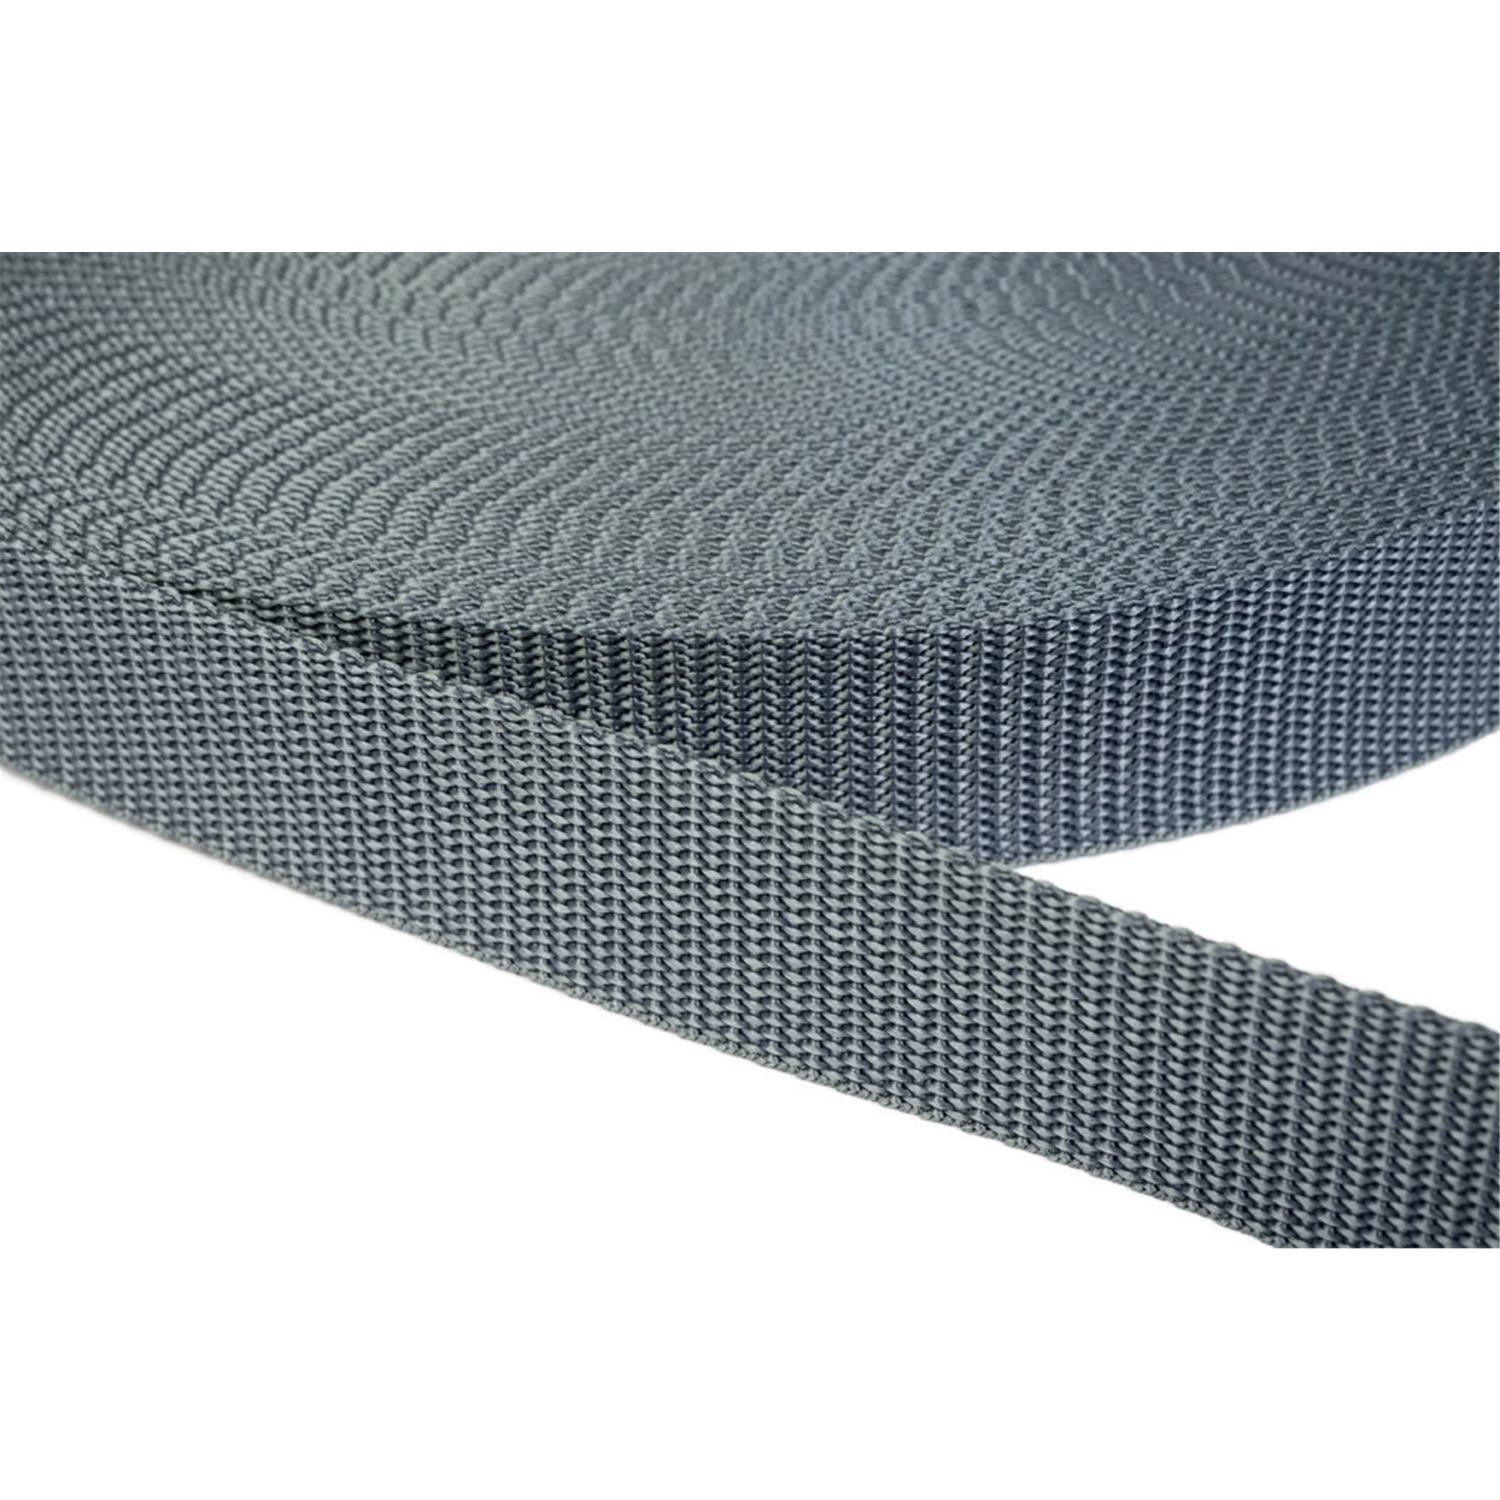 Gurtband 50mm breit aus Polypropylen in 41 Farben 38 - mittelgrau 12 Meter